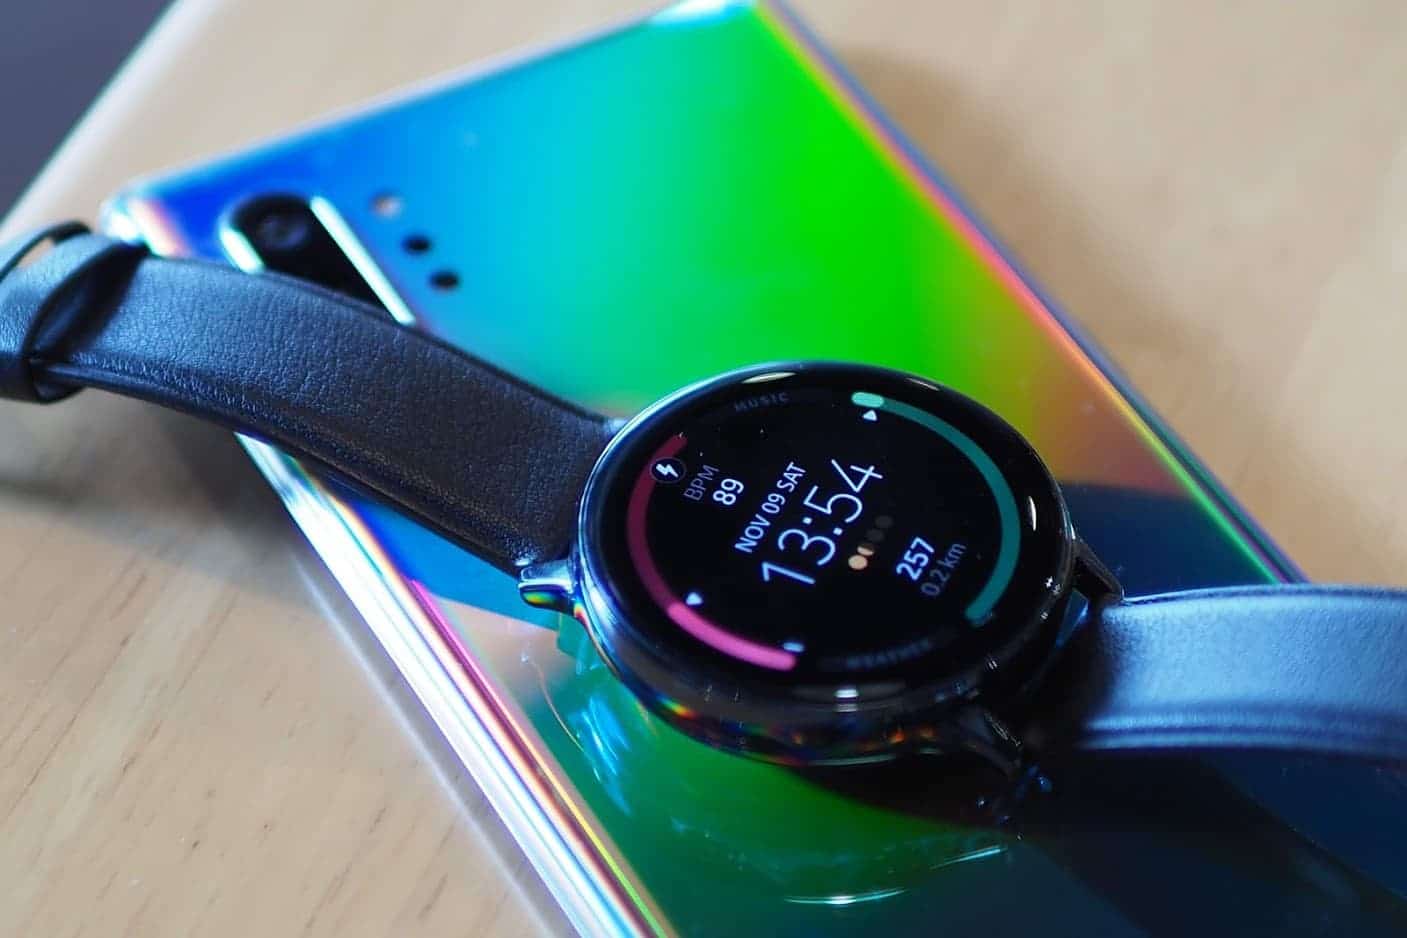 รีวิว Samsung Galaxy Watch Active 2 | ครบทุกอย่างในตัวเดียว ลงแอปได้ โทรได้ ไม่ต้องพึ่งสมาร์ทโฟน 69